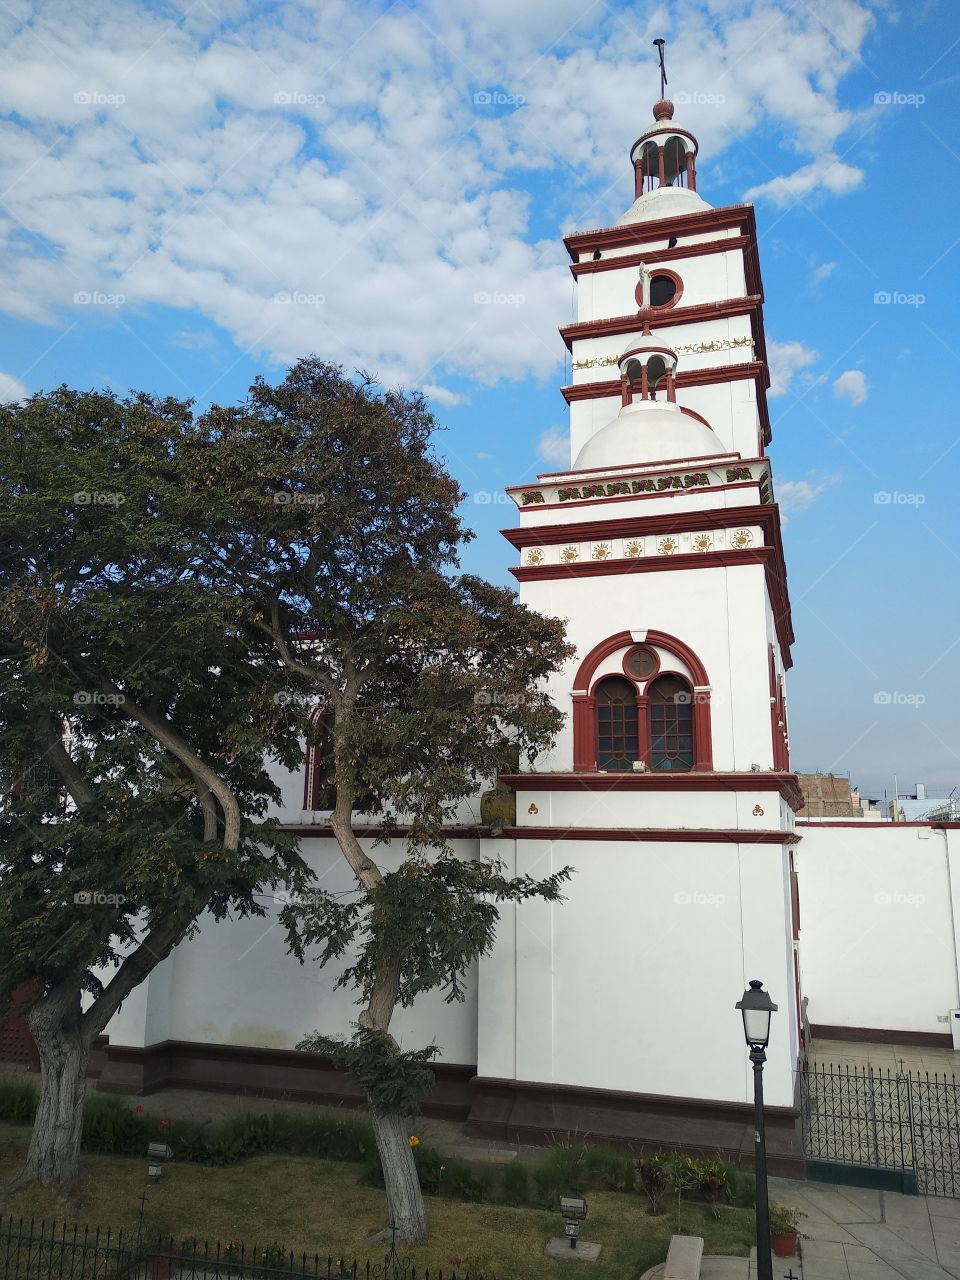 Peru church in Trujillo